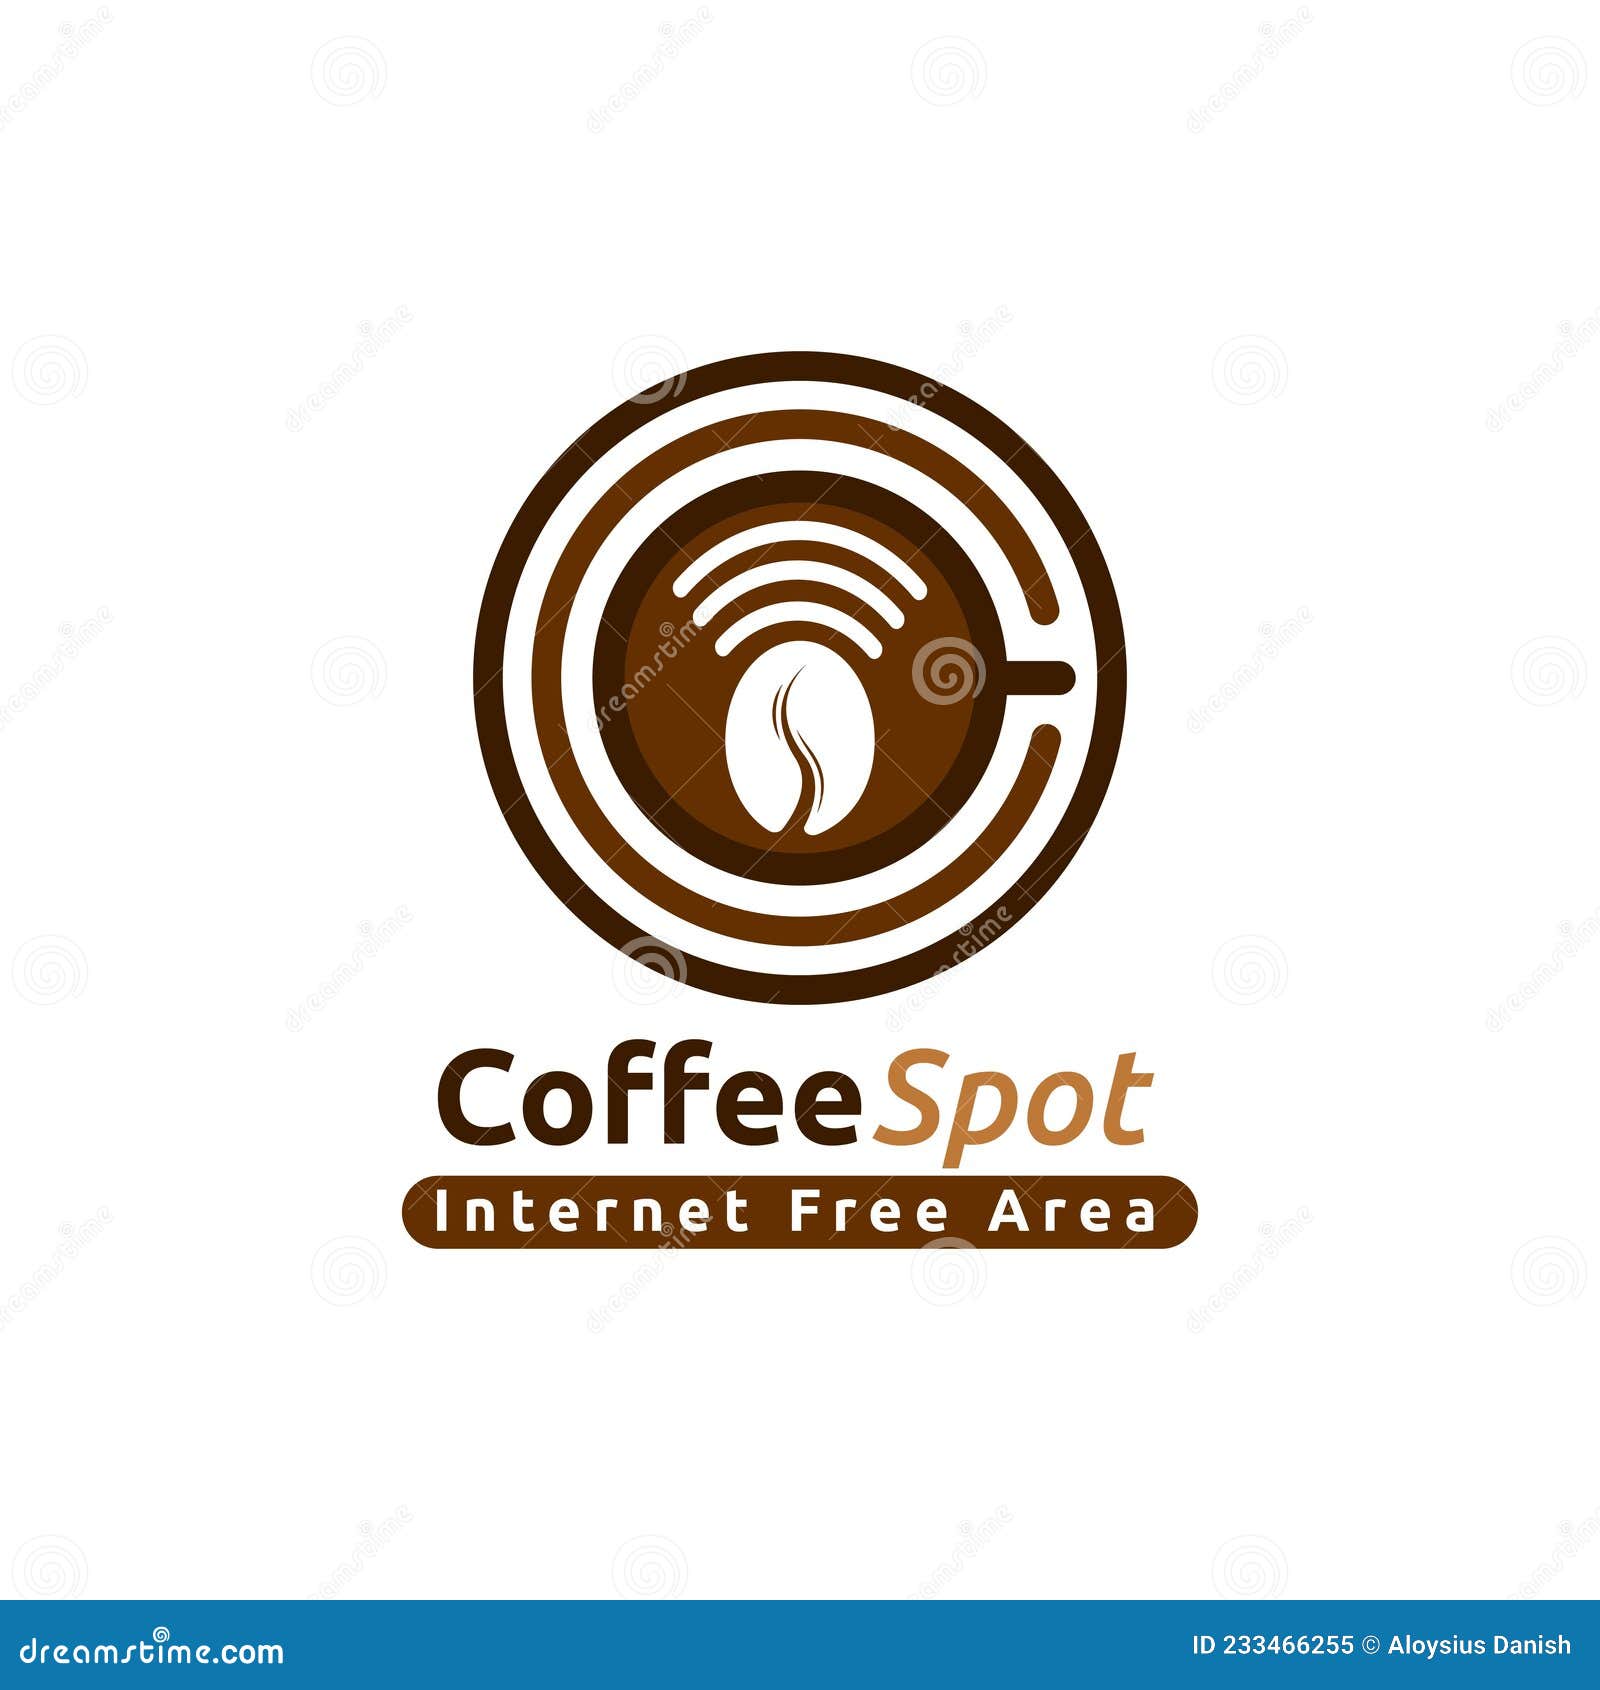 hot spot logo